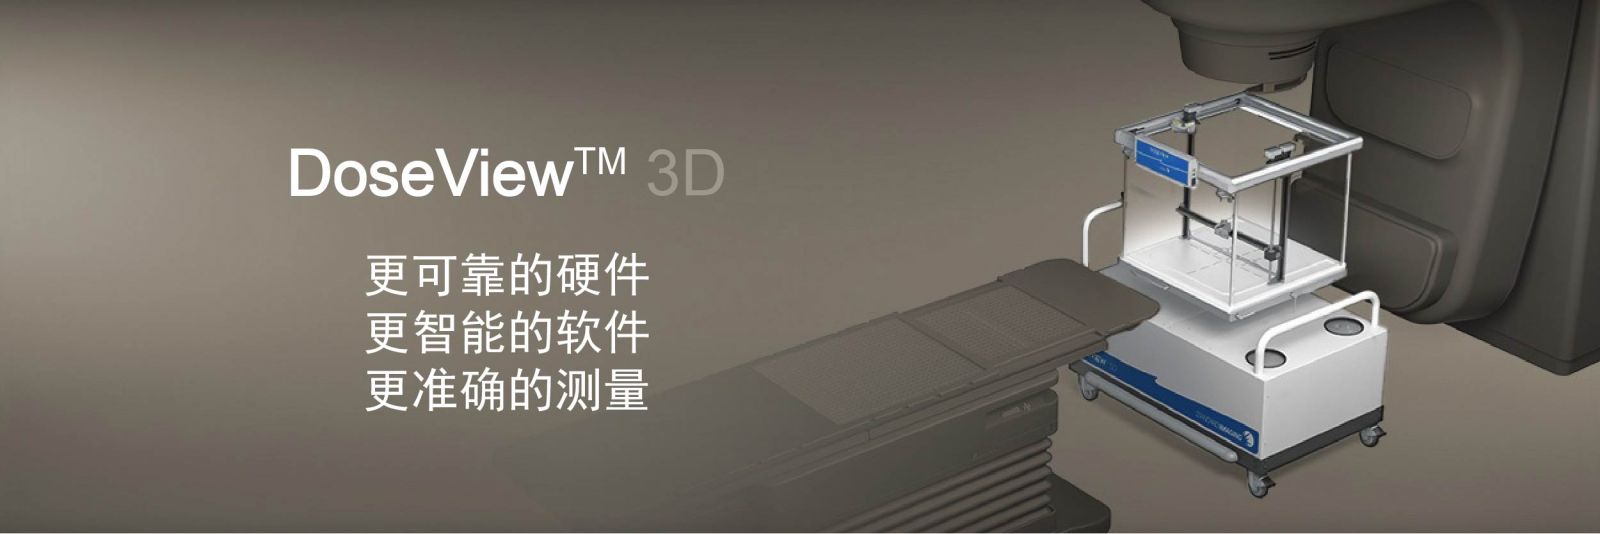 1三维扫描水箱系统DoseView 3D.jpg